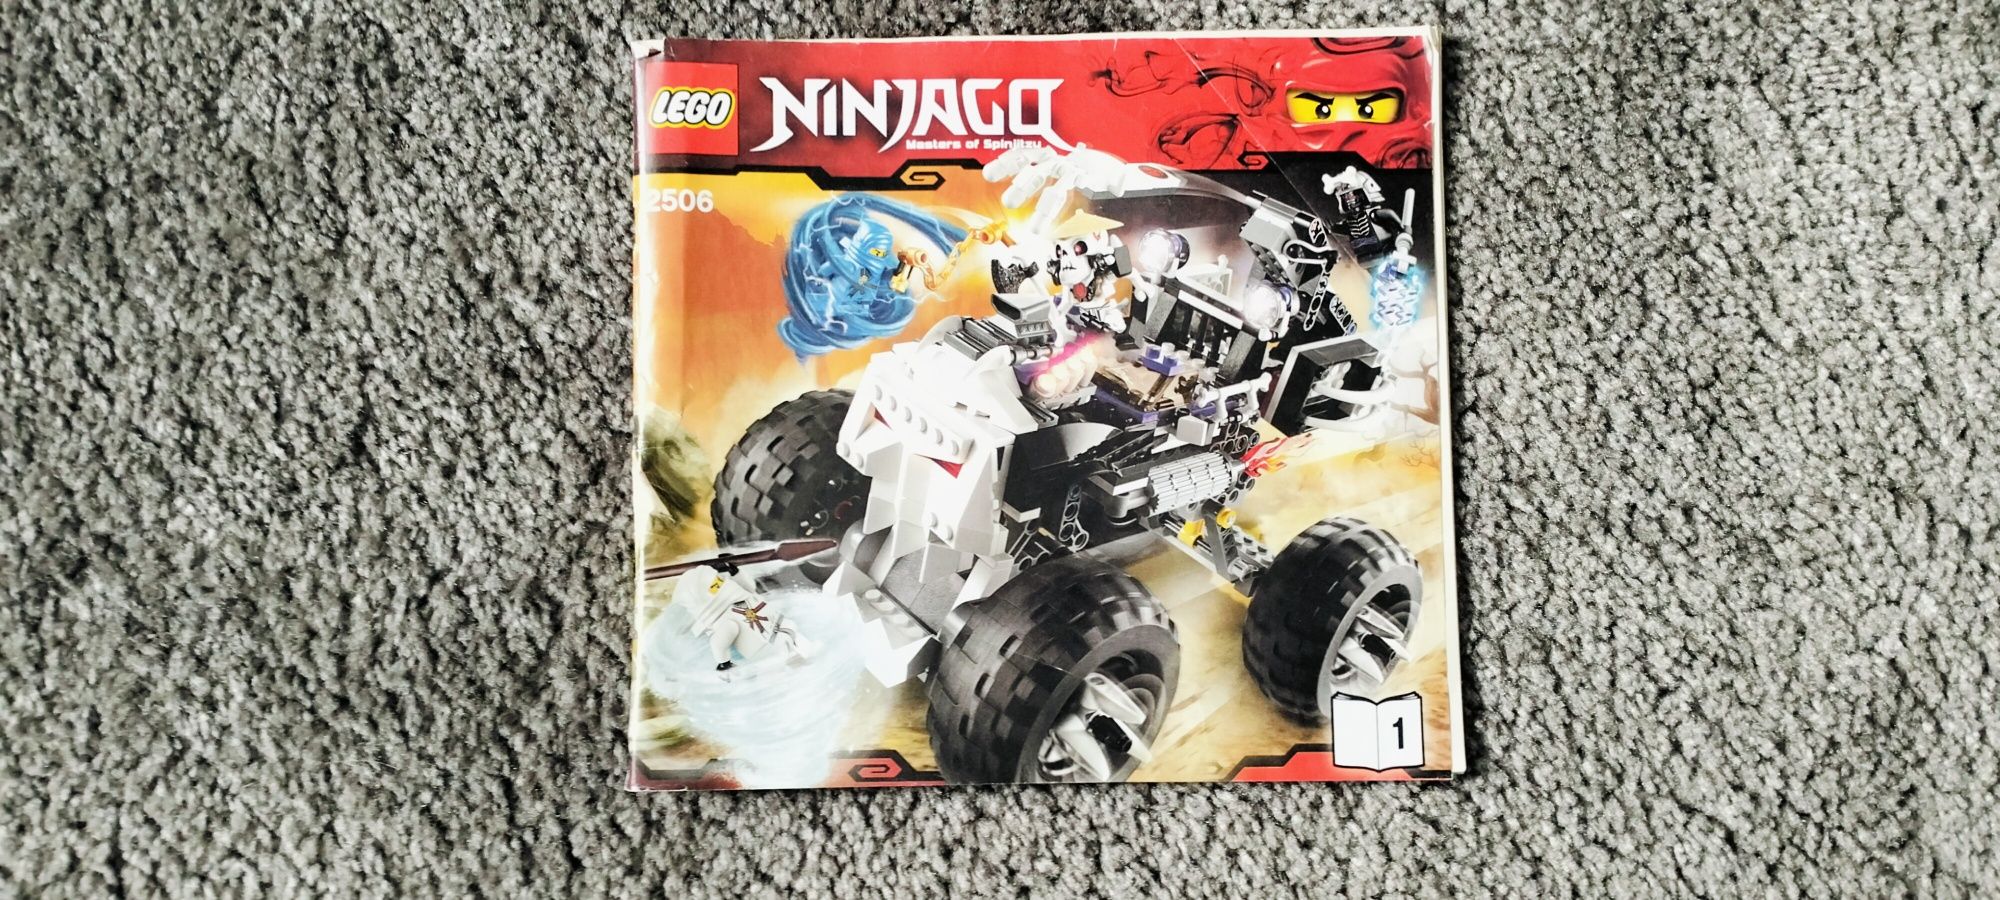 Lego Ninjago 2506